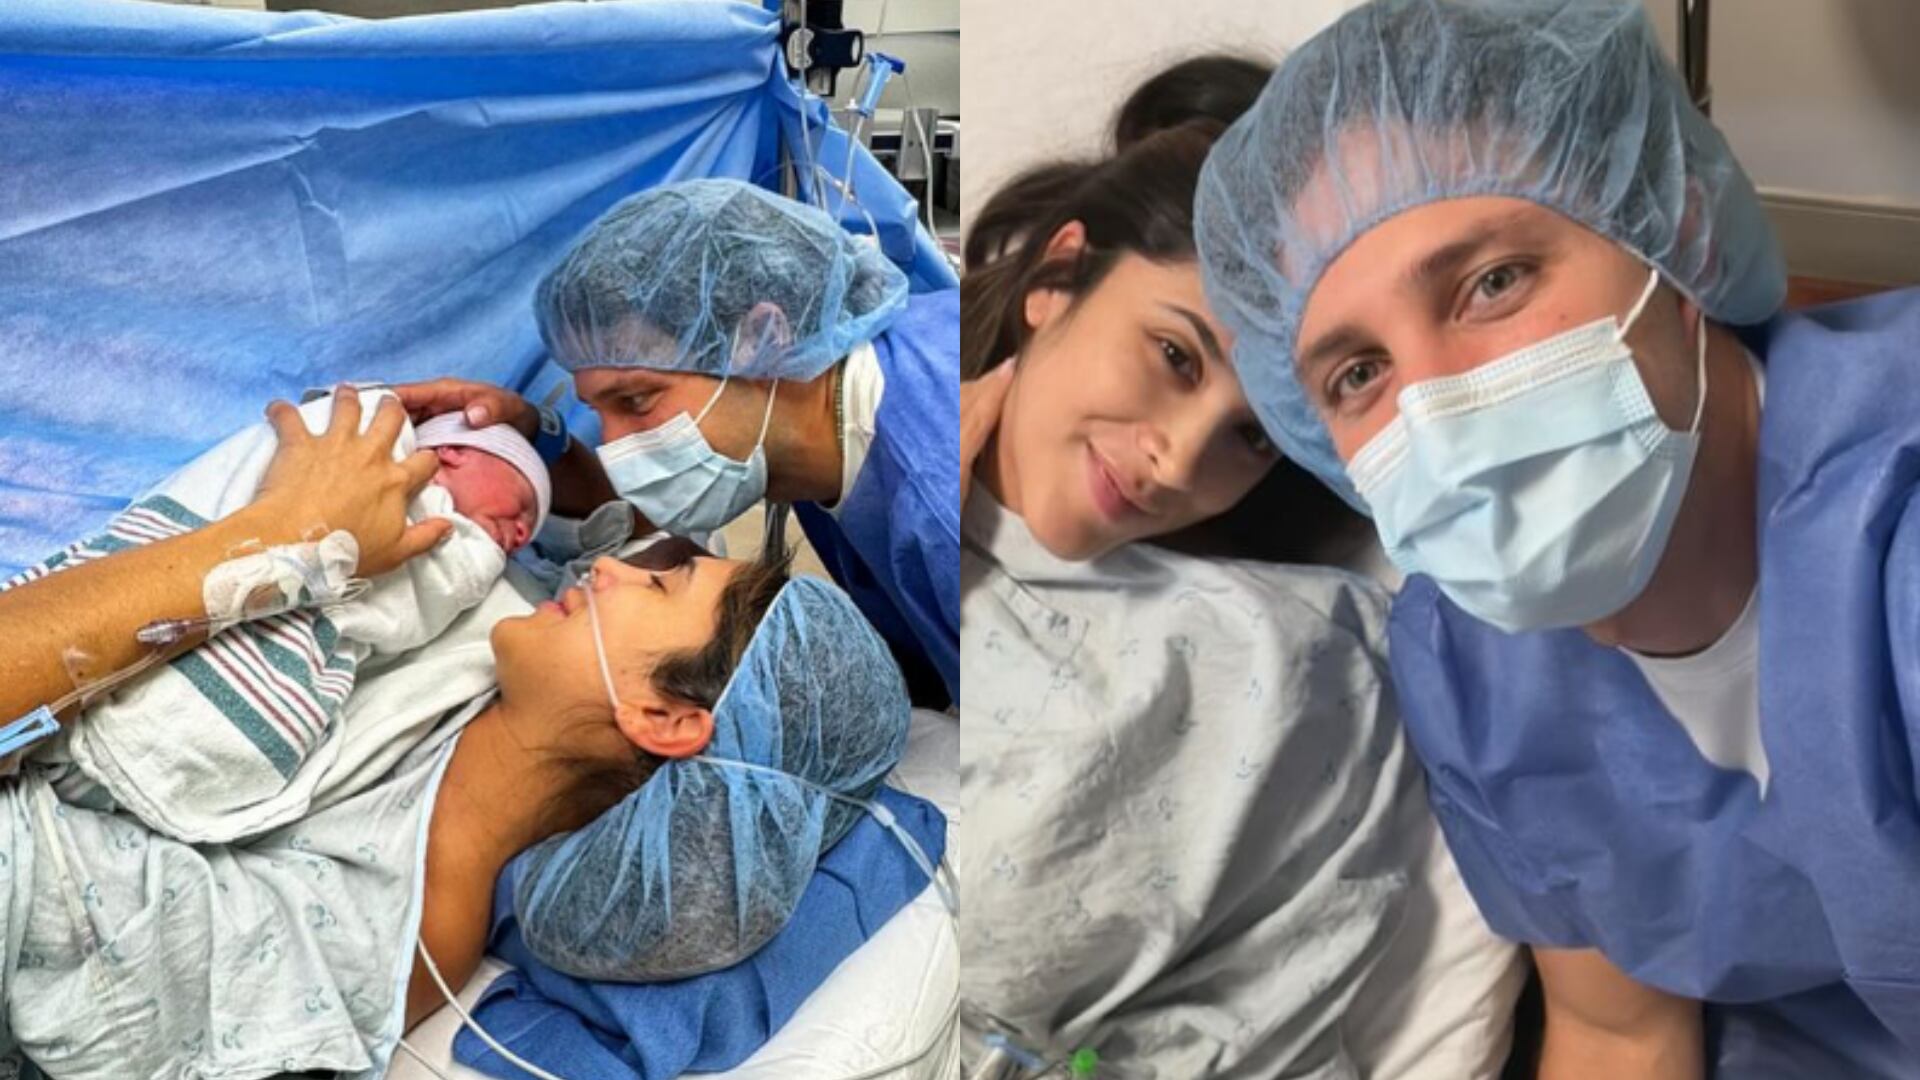 Daniela Ospina enterneció las redes sociales al mostrar por primera vez fotos de su pequeño hijo: “Me derretí”